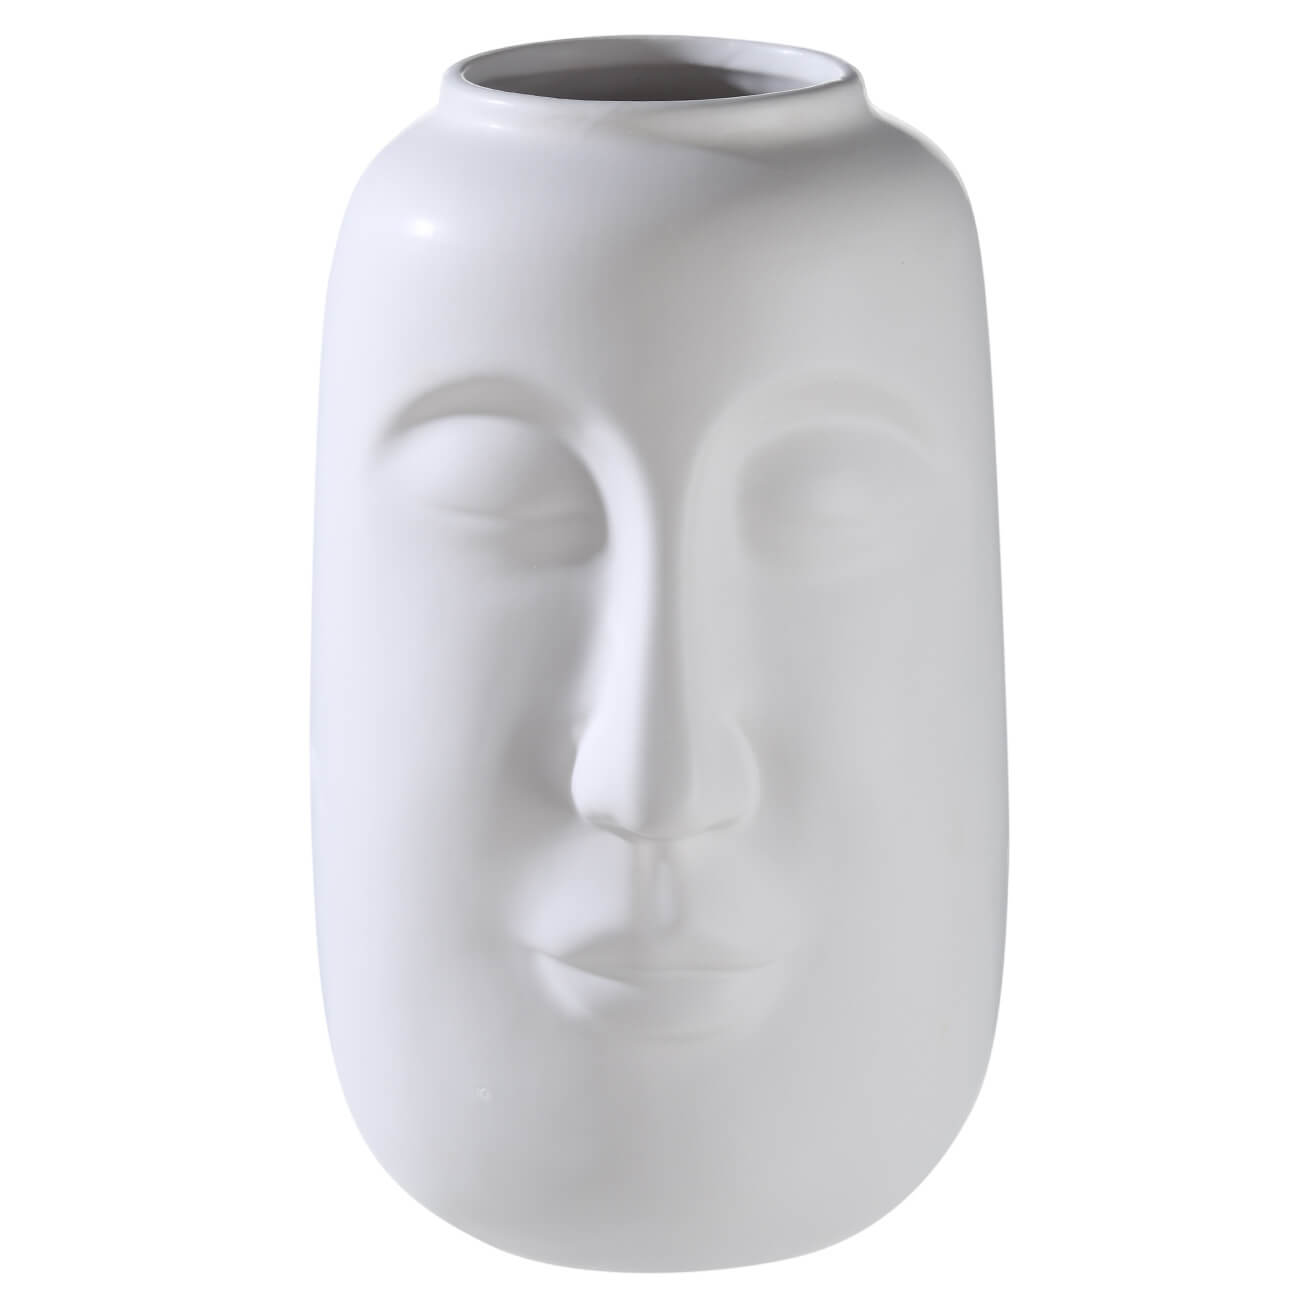 Ваза для цветов, 26 см, декоративная, керамика, белая, Лицо, Face блюдо 24 см керамика белое лицо face